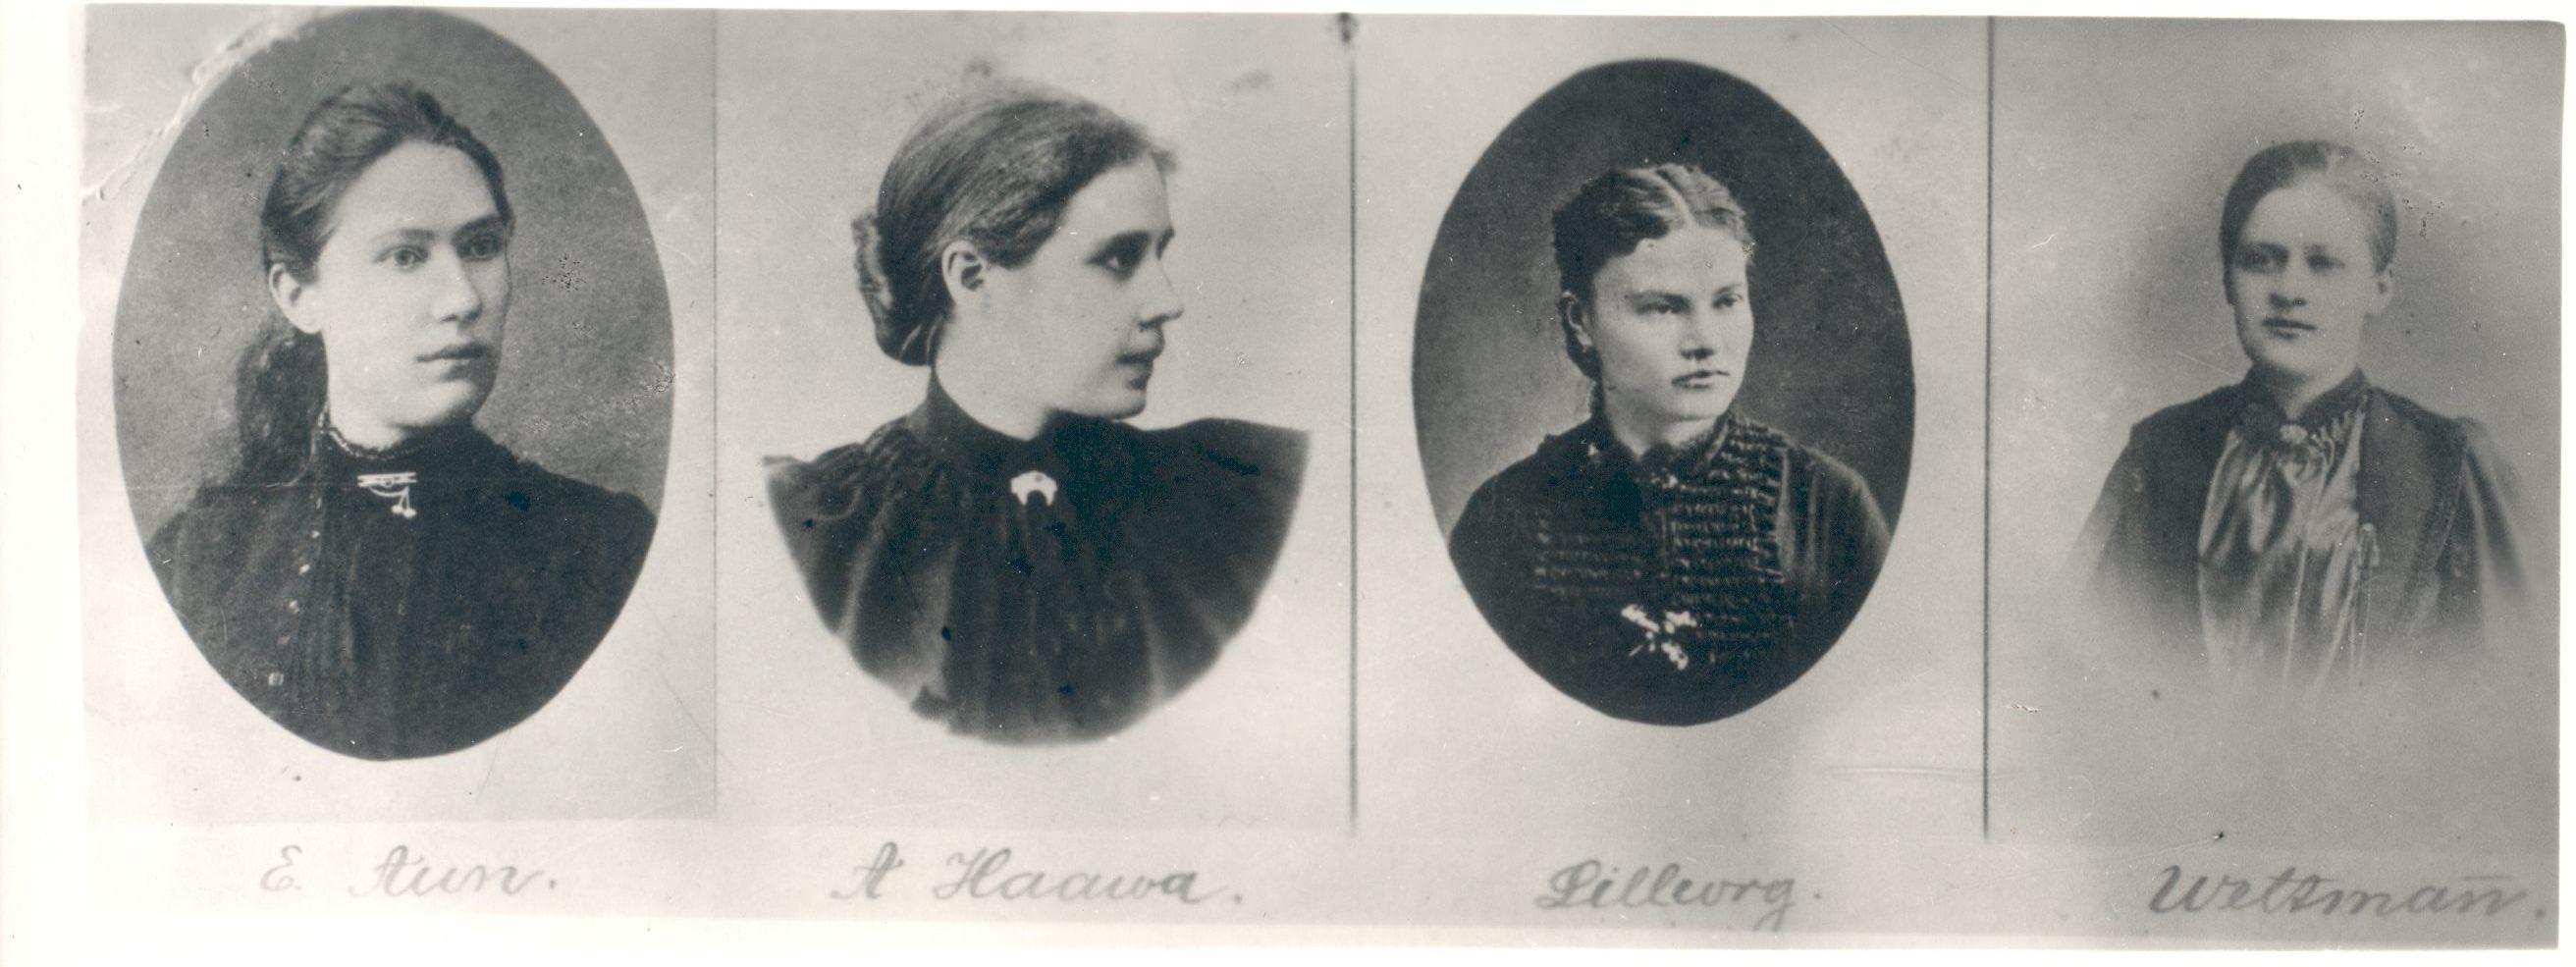 Wound, Anna(the second), e. Aun, Lilleorg, Weltman